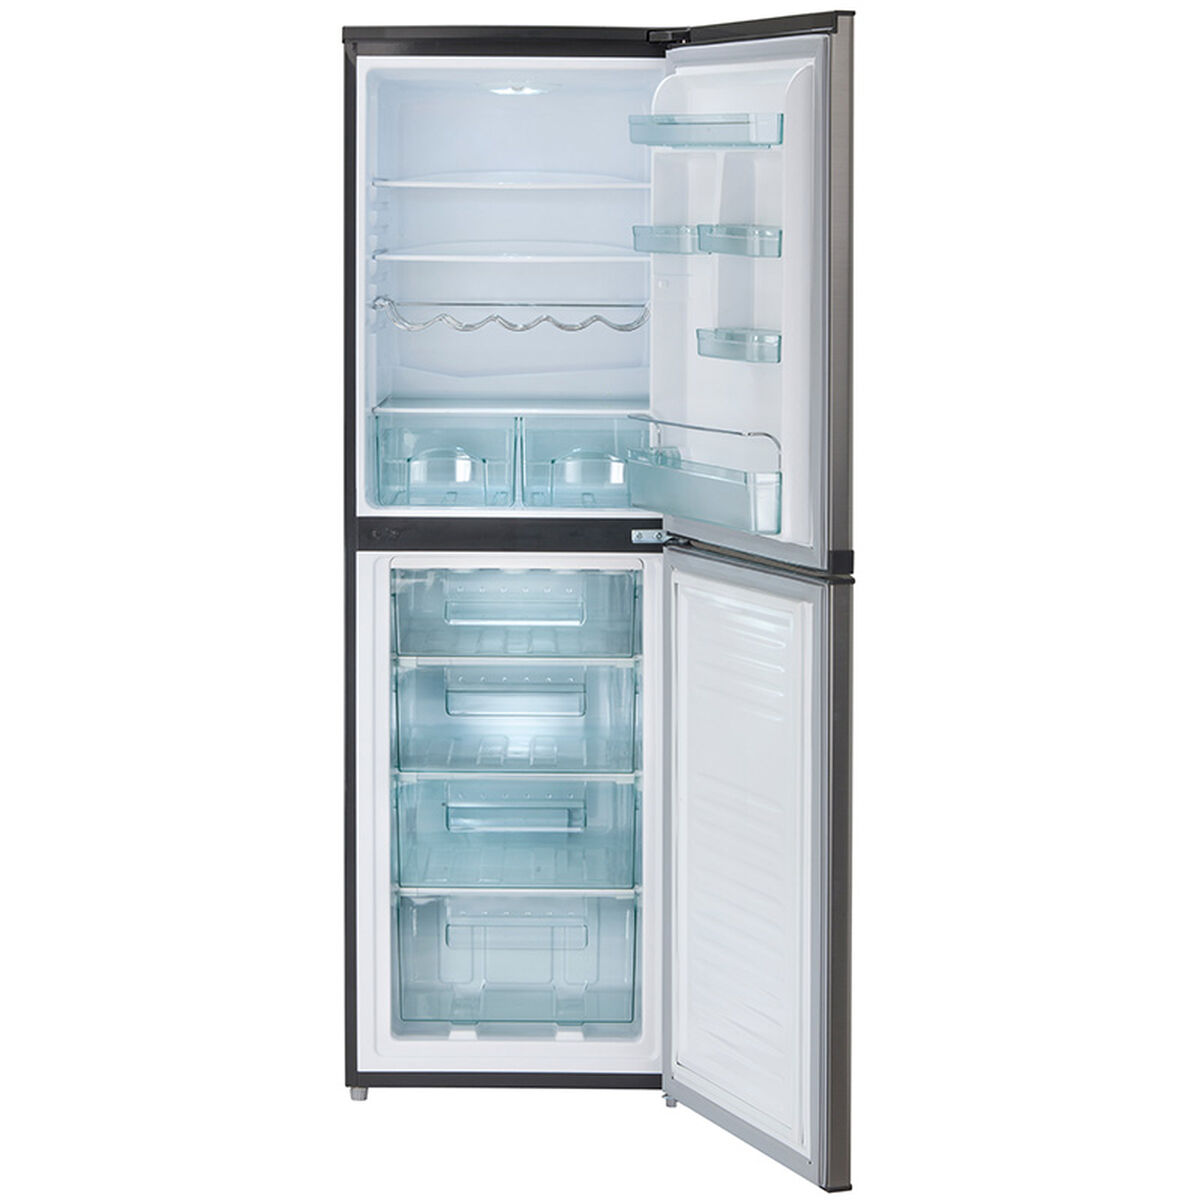 Refrigerador Frío Directo Fensa 3100 244 lt